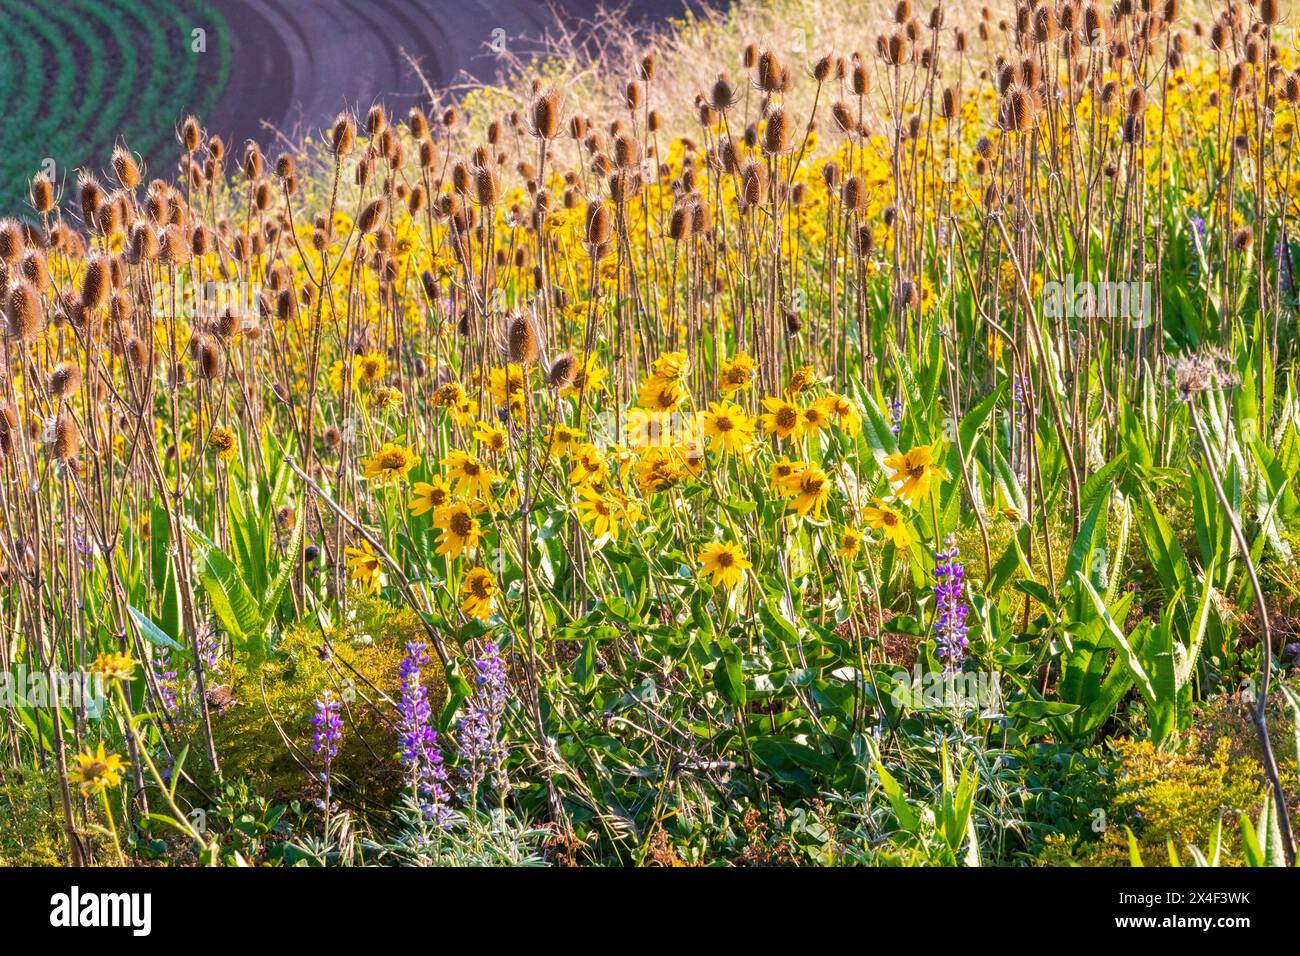 USA, Washington State, Palouse, Colfax. Abstrakt, Feld der schwarzen Augen susan Blumen, die im Wind winken. Rudbeckia hirta. Stockfoto